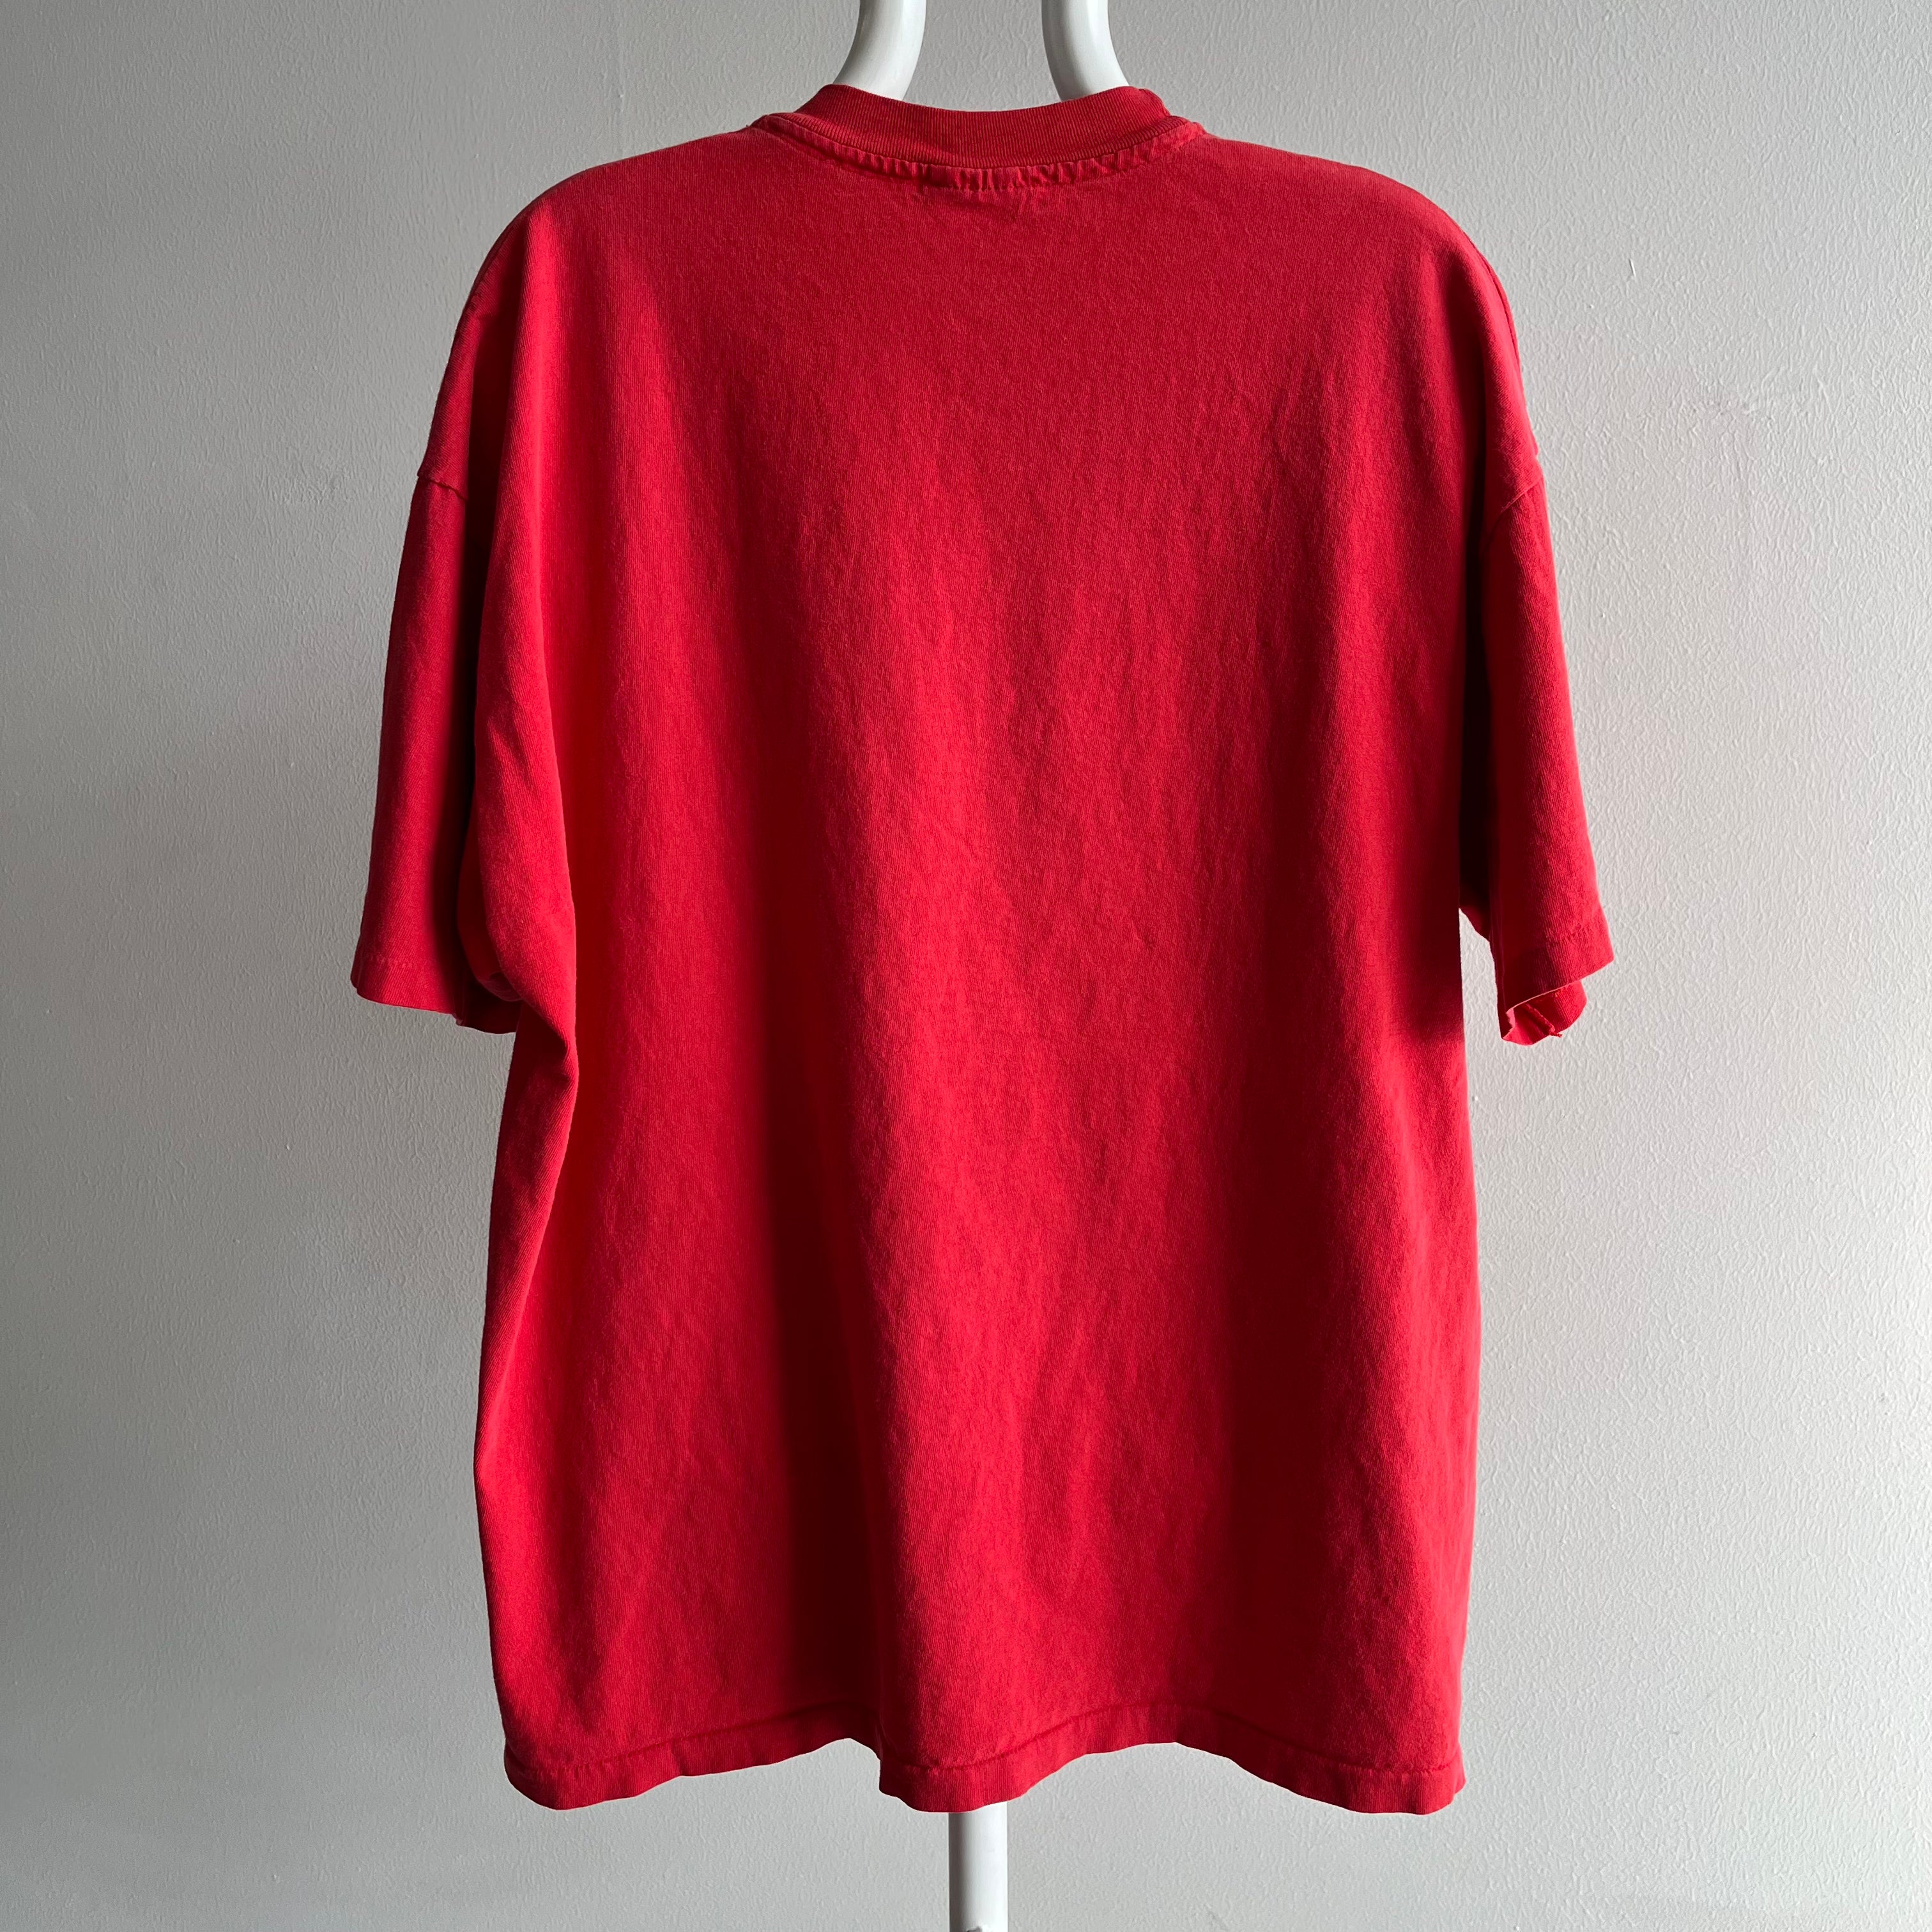 1990s Chicago Bulls Oversized T-Shirt